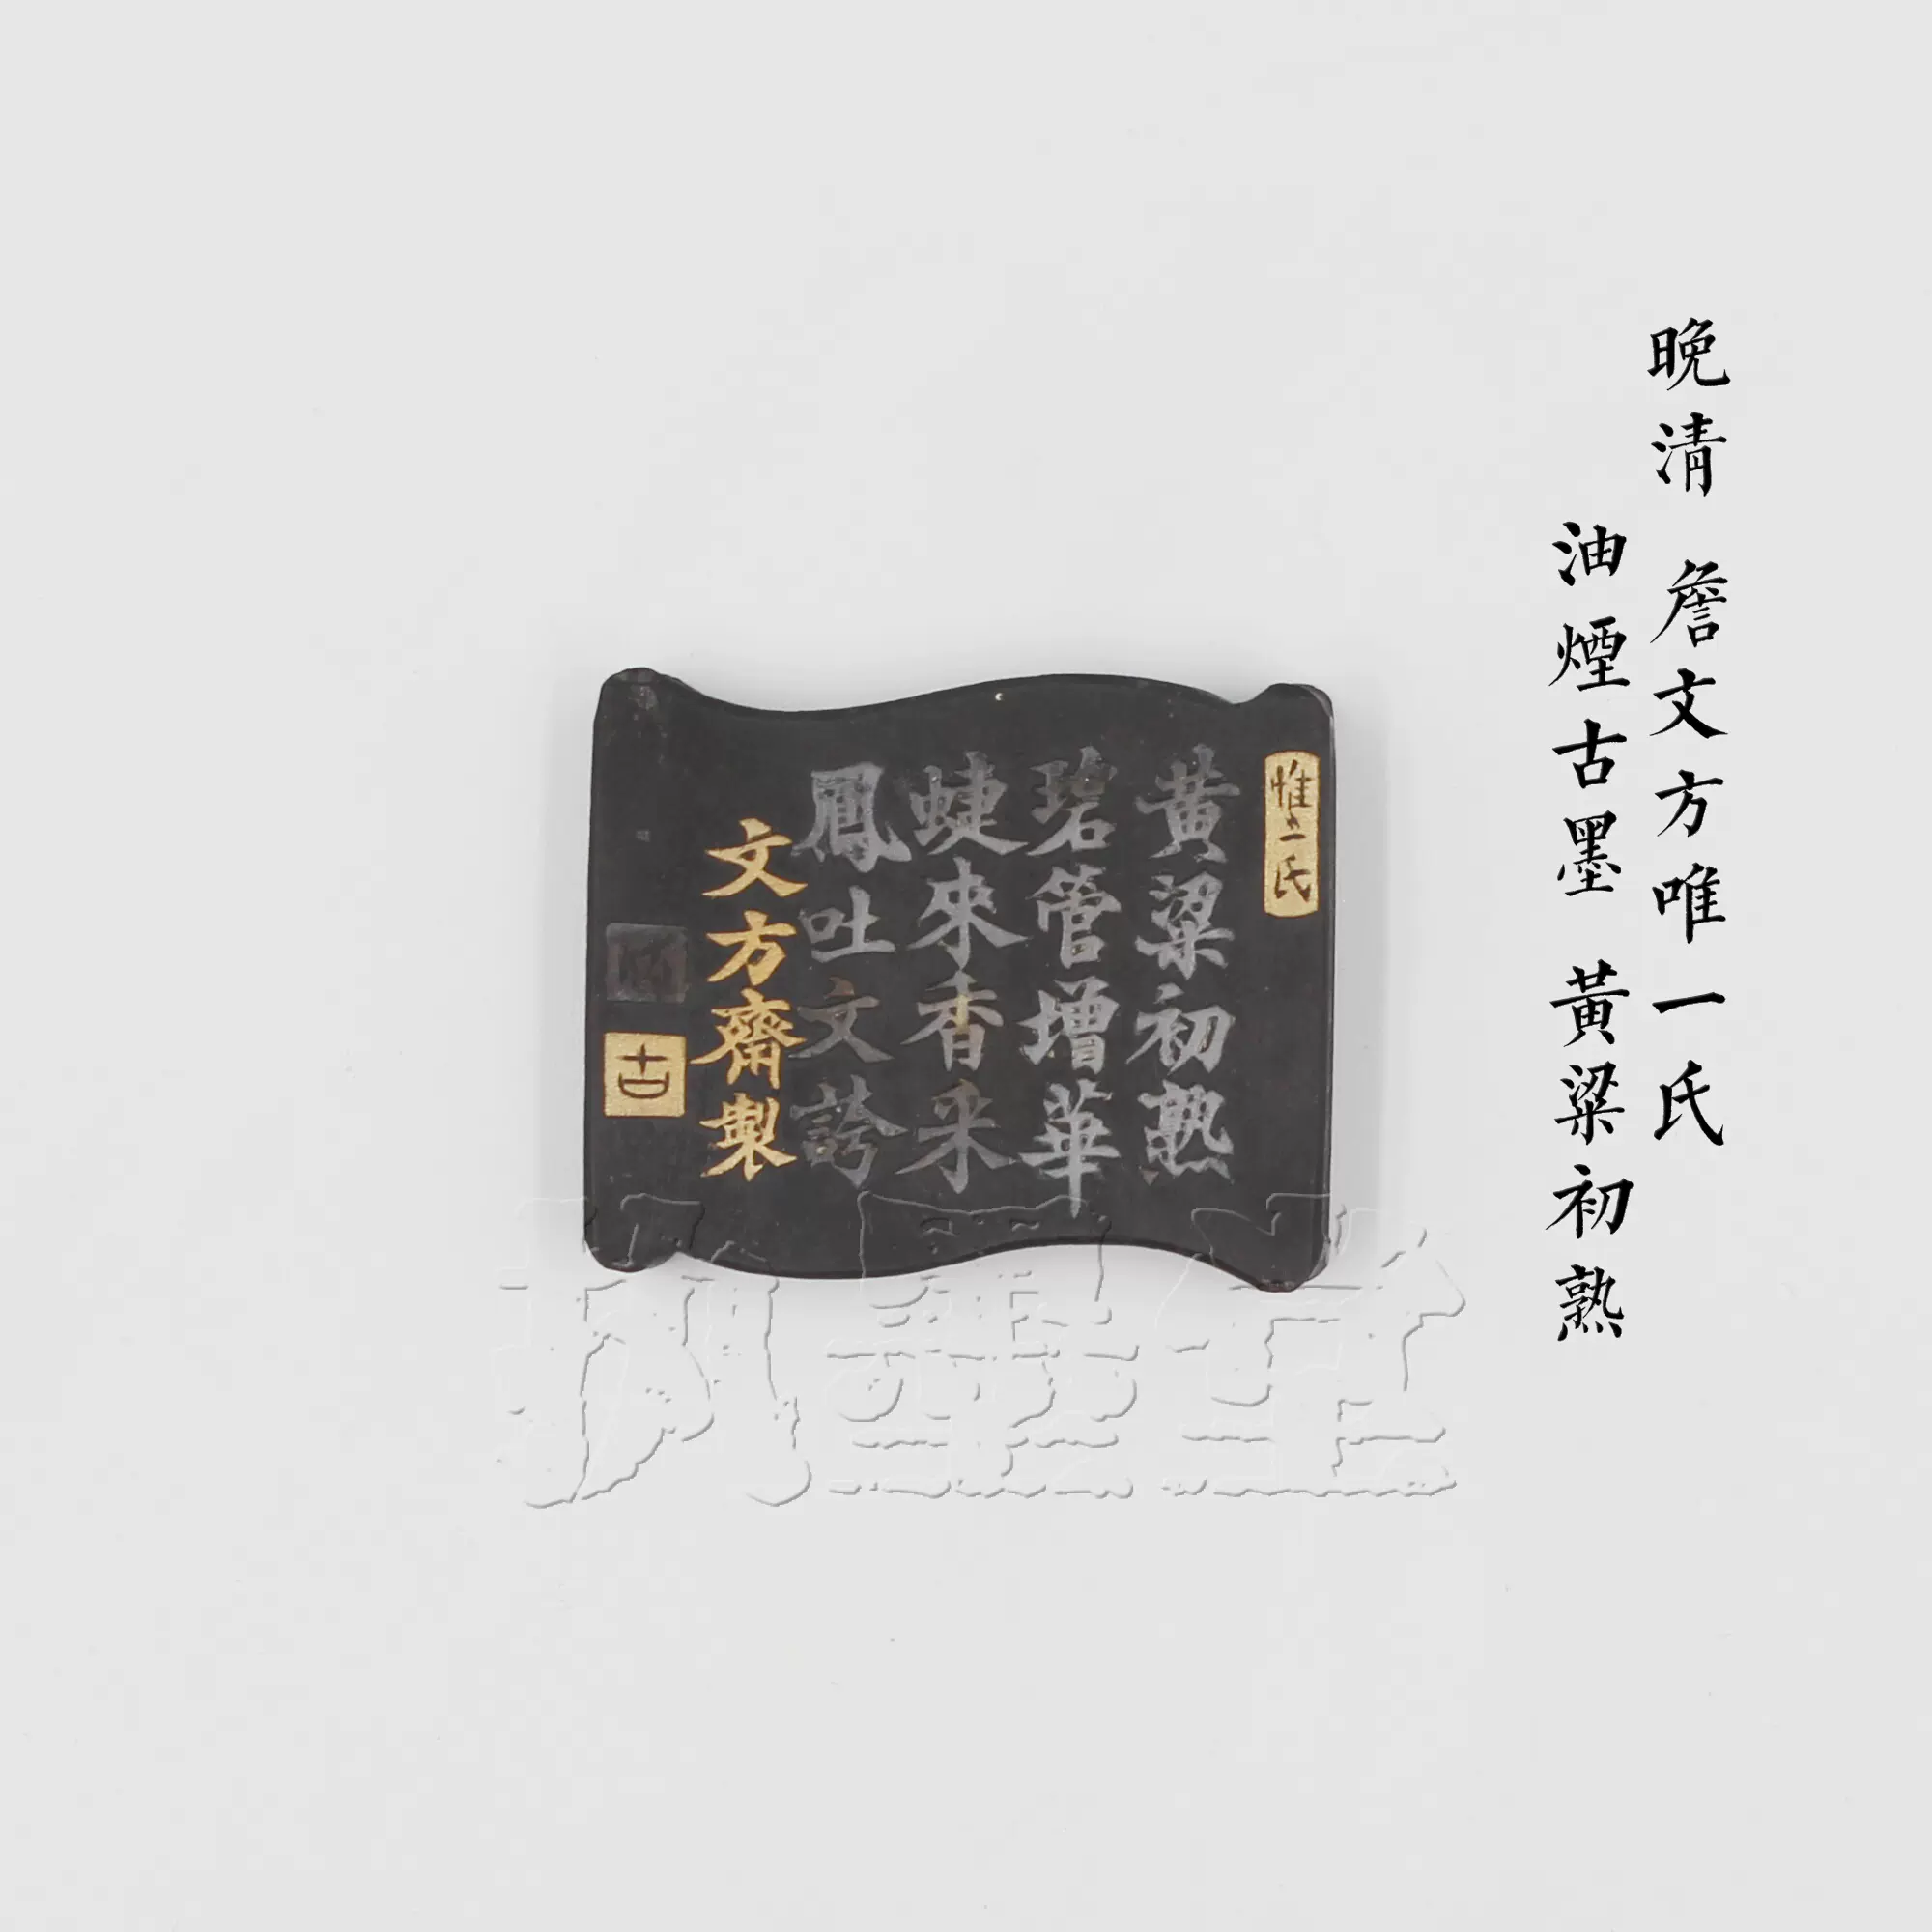 铁斋翁上海墨厂88年4两101上级油烟墨锭实用墨块文房书画墨条